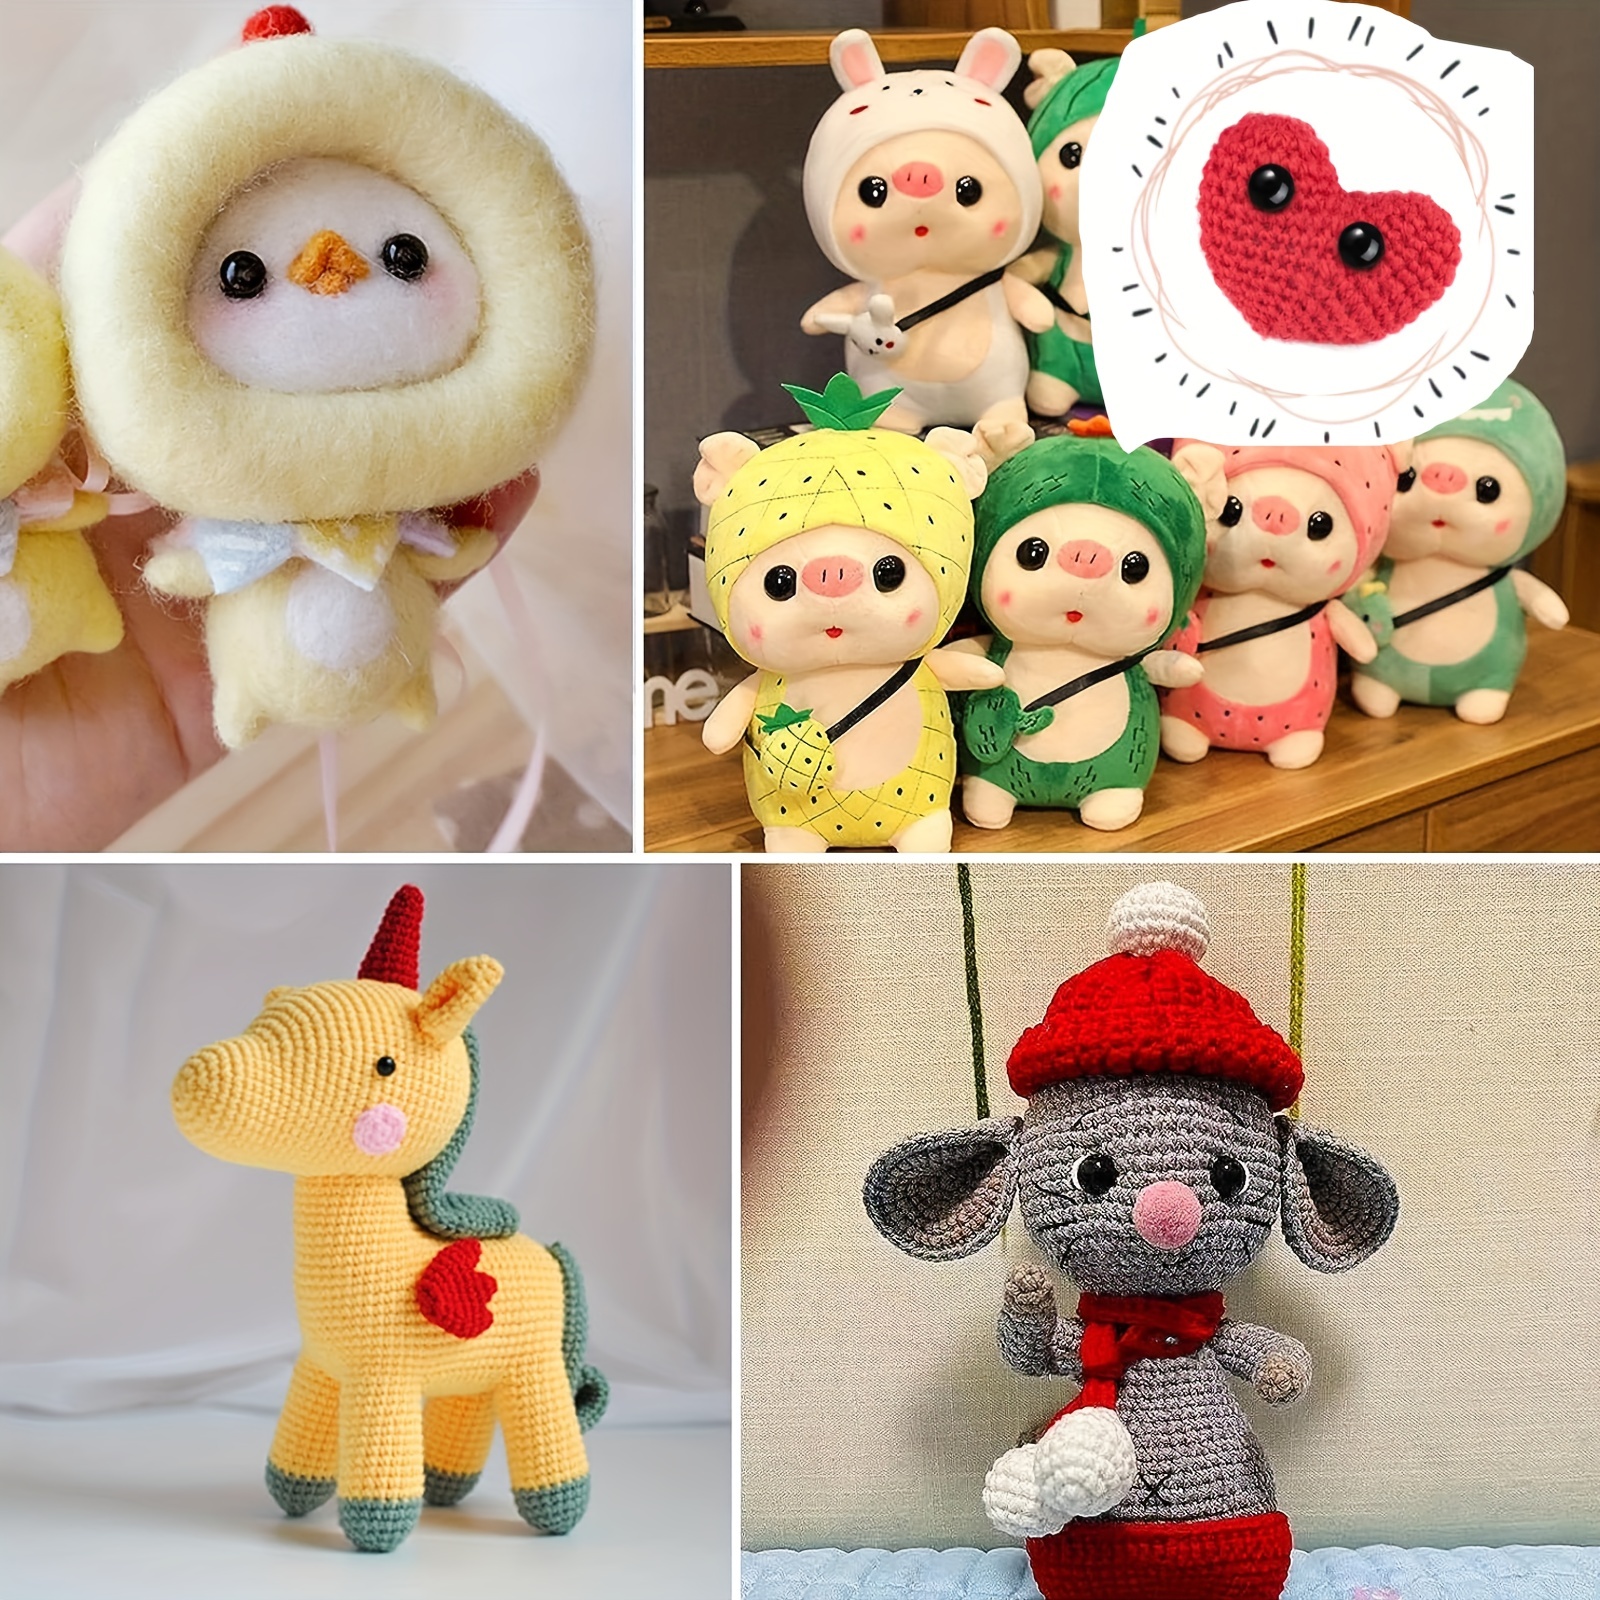 20 Pairs Dragon Eye Safety Eye for Stuffed Animal Doll Making with Washer  Craft Eyes Teddy Bear Amigurumi Crochet Toy 9mm